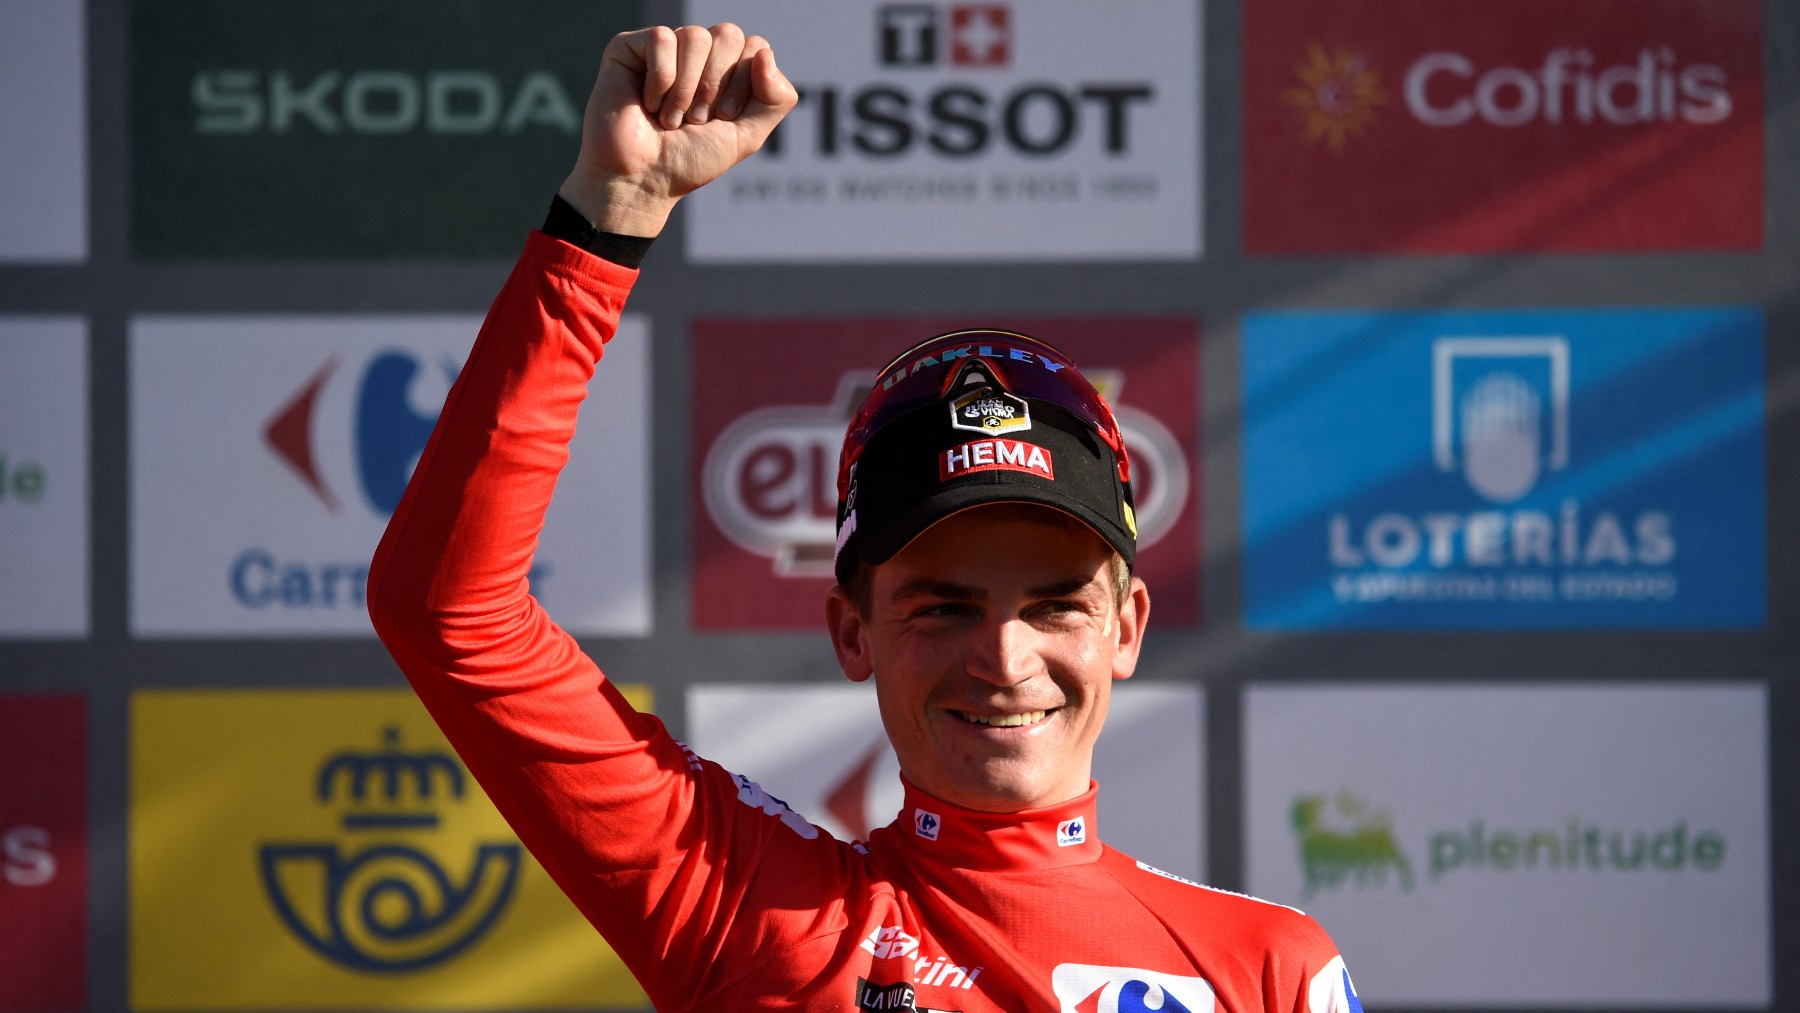 Sepp Kuss saluda a los aficionados tras seguir con el mallot rojo en la Vuelta. (AFP)